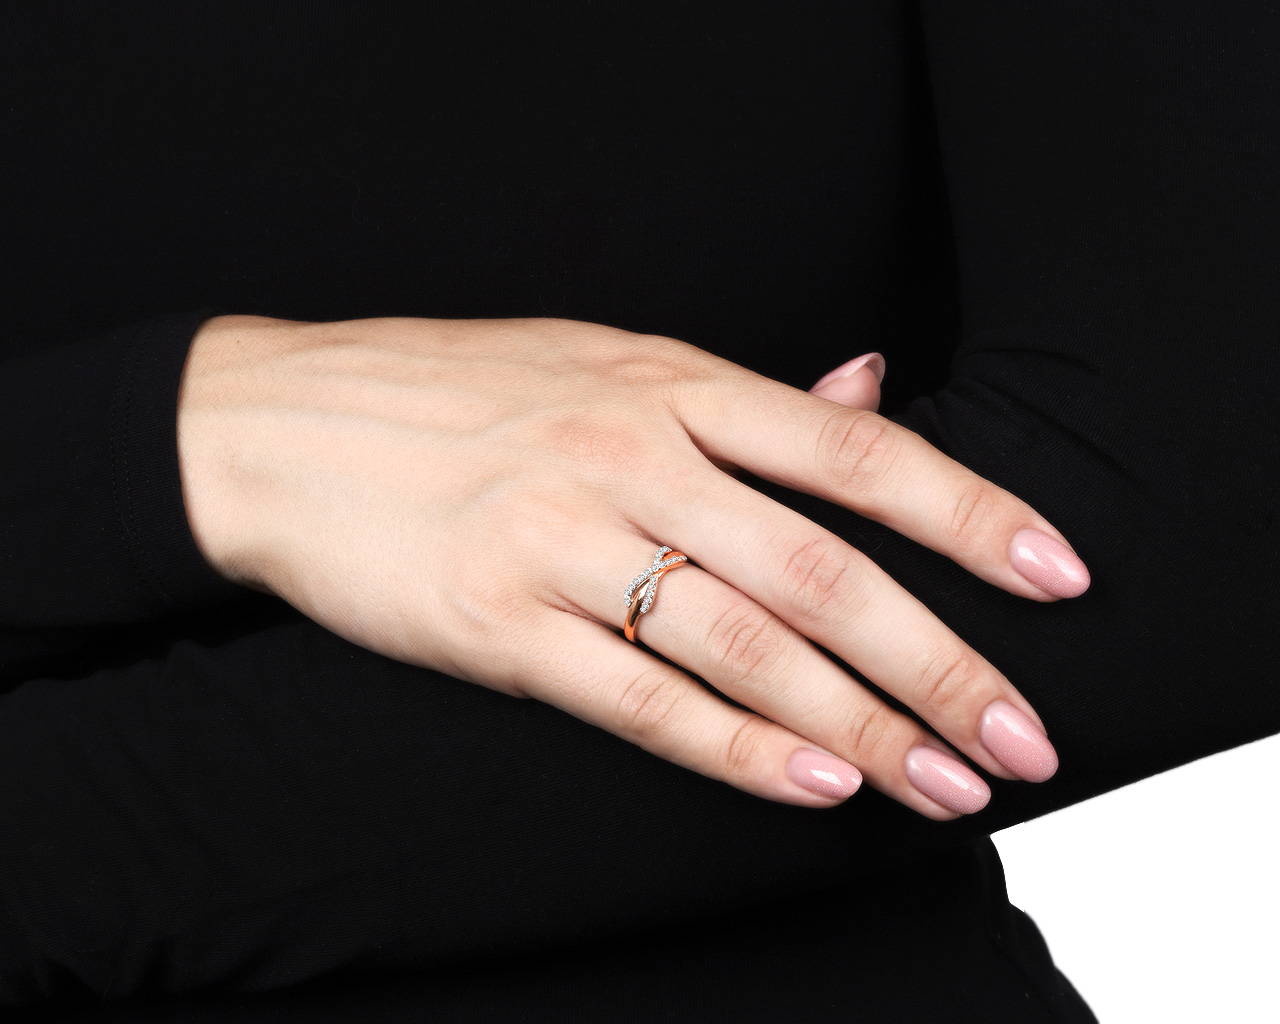 Оригинальное золотое кольцо с бриллиантами 0.17ct Tiffany&Co Infinity